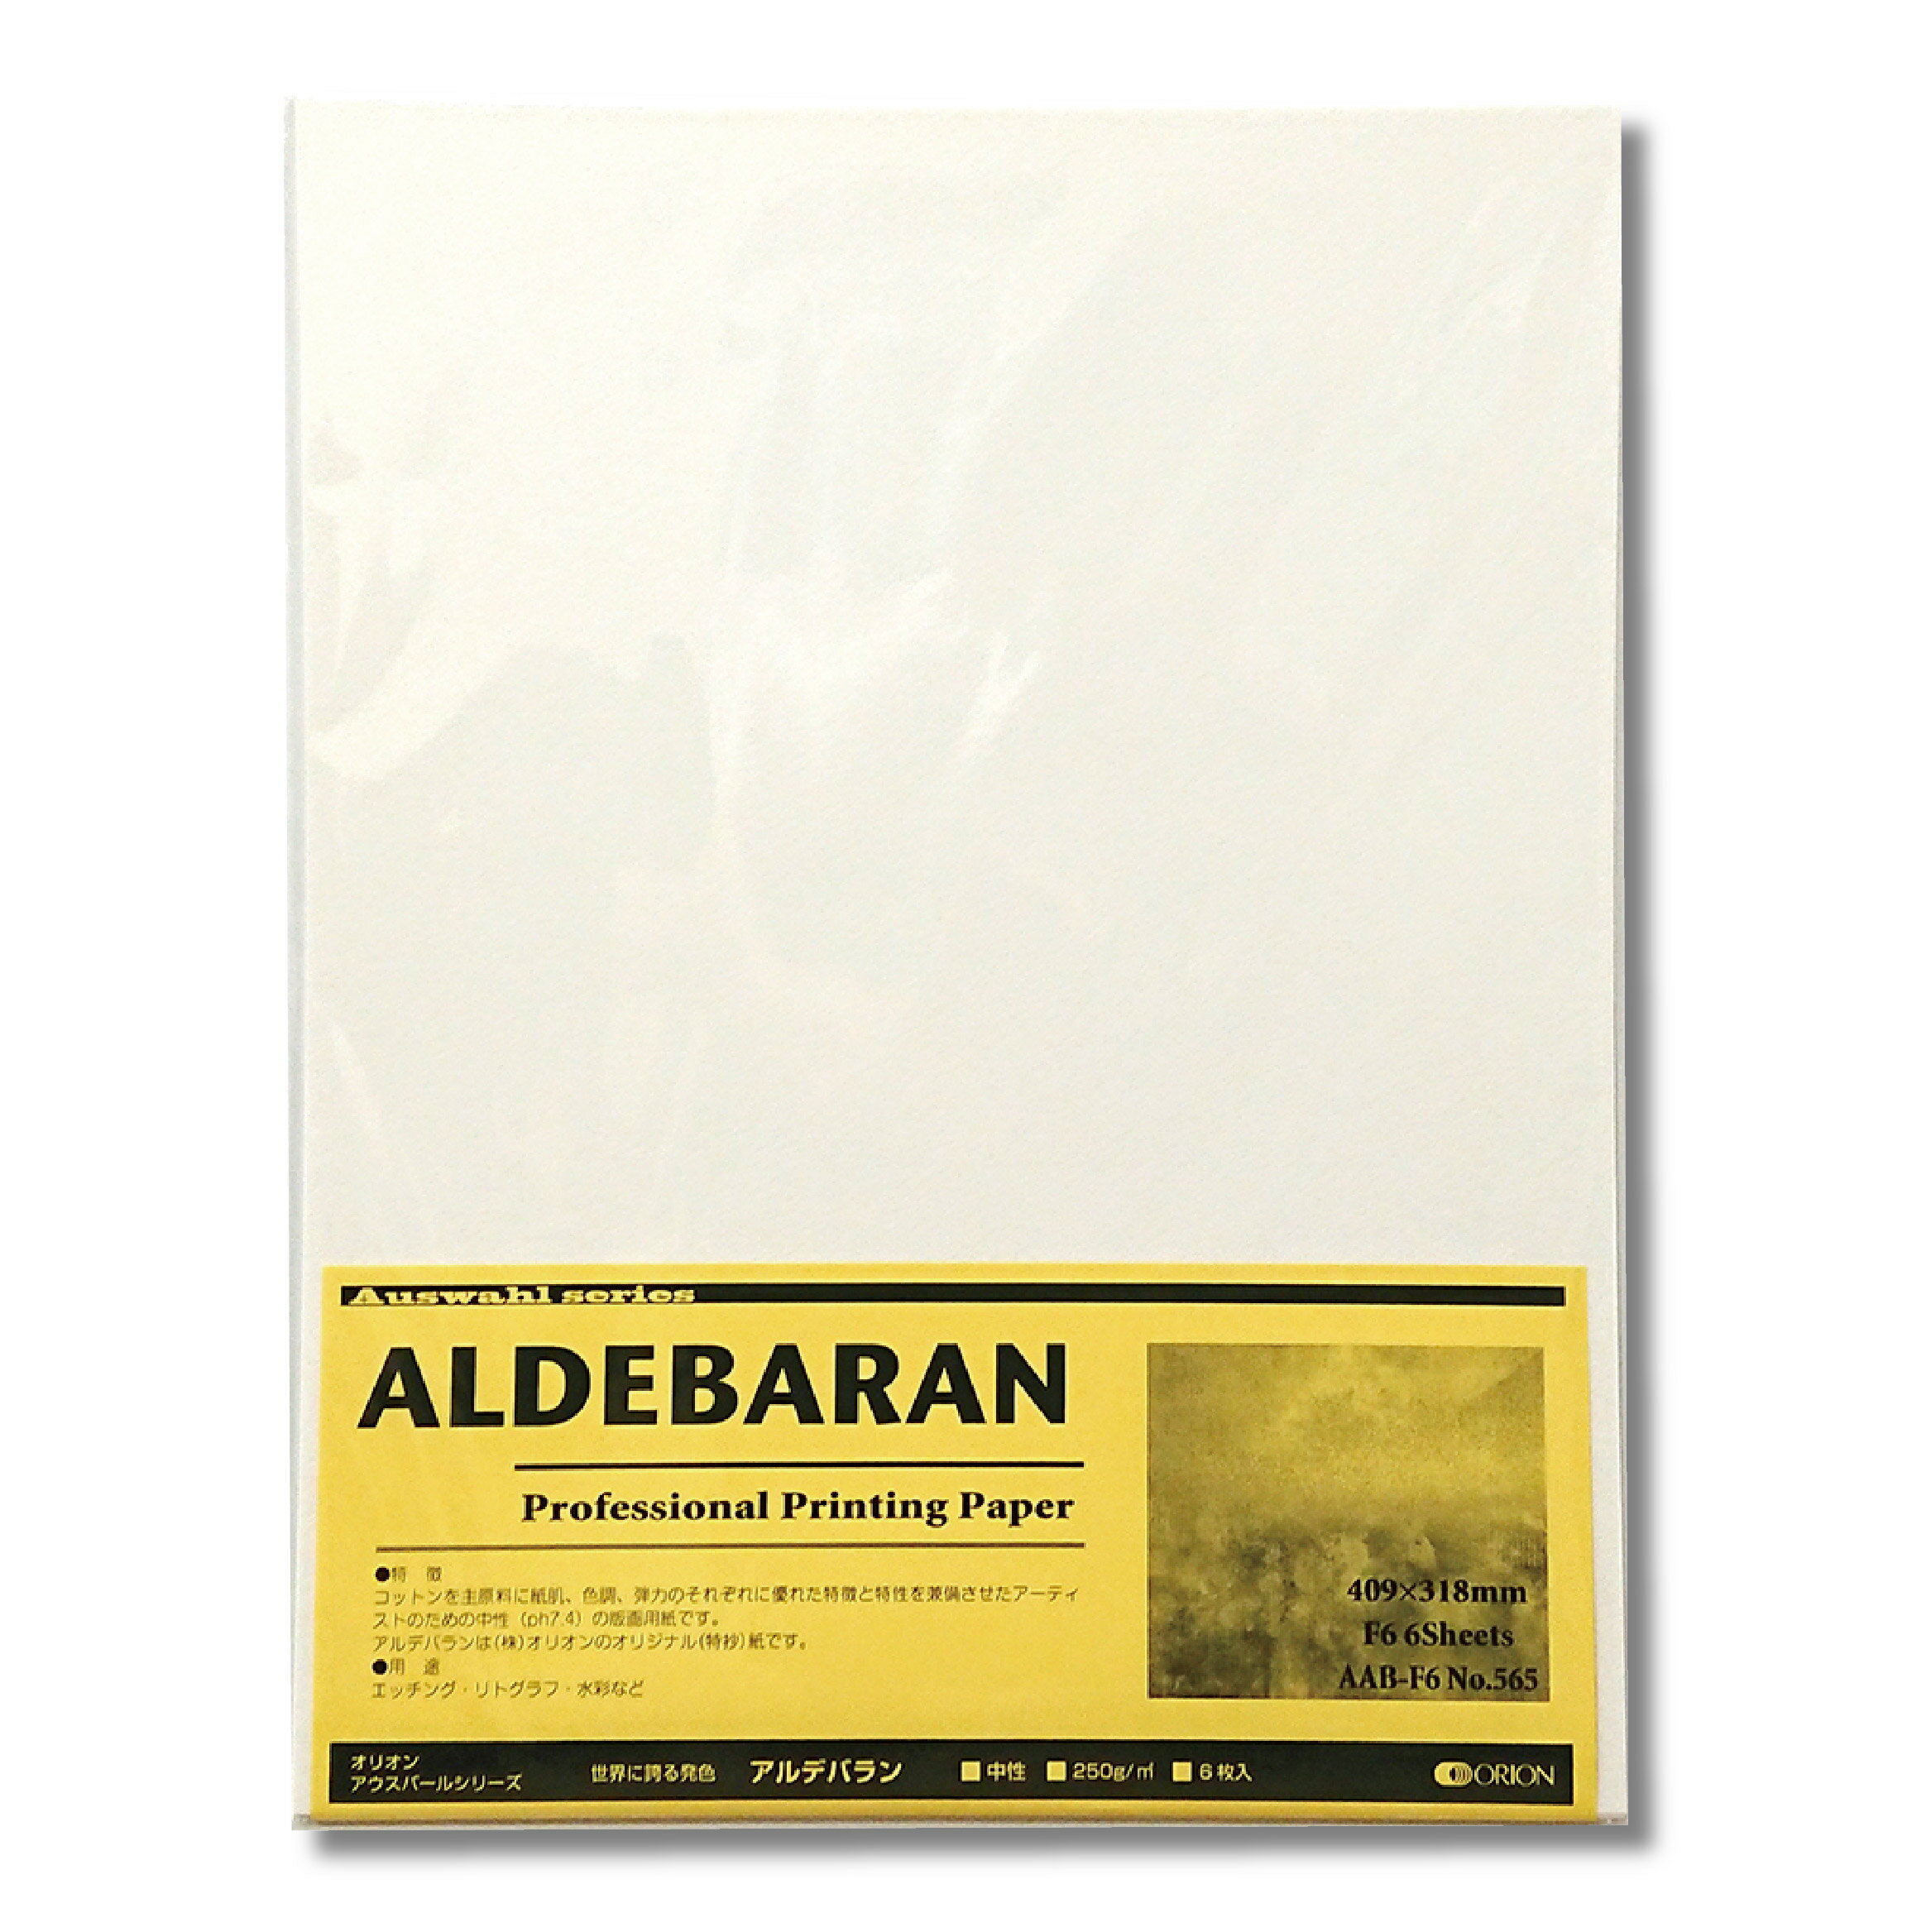 オリオン アルデバラン紙 250g F4サイズ 5枚入り 版画用紙 水彩紙 333mm×242mm AAB-F4 アウスバールシリーズ